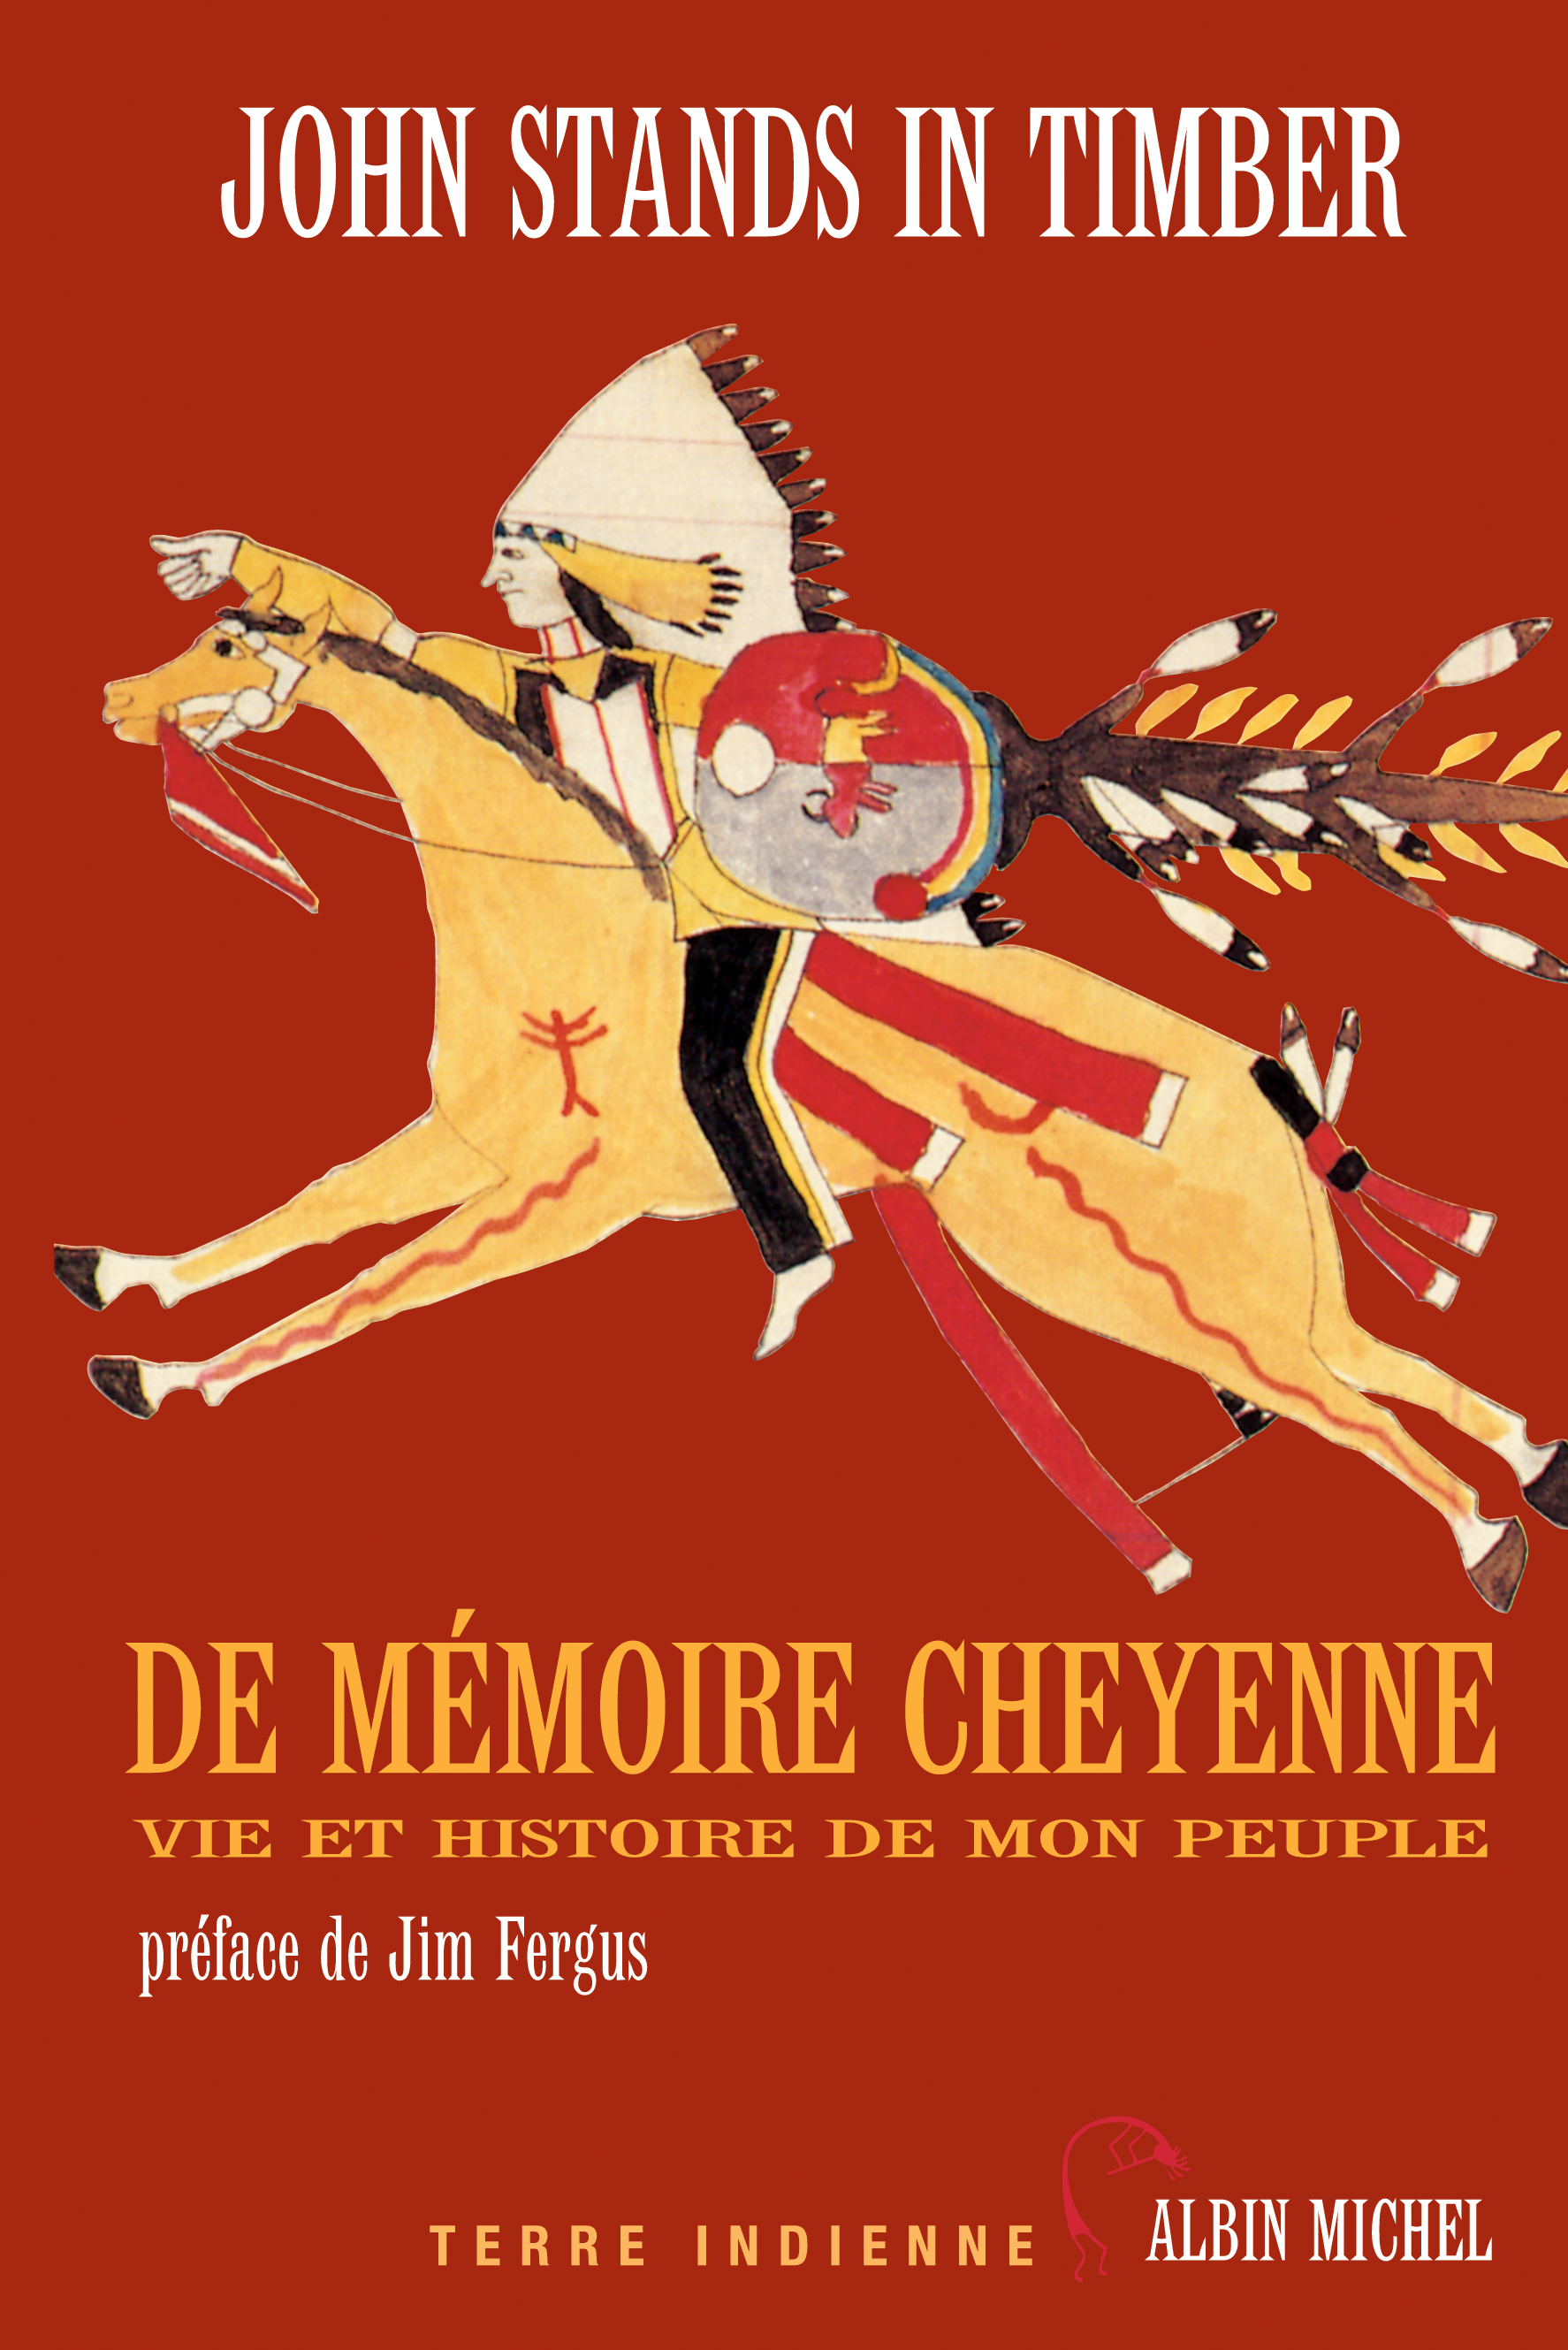 Couverture du livre De mémoire cheyenne